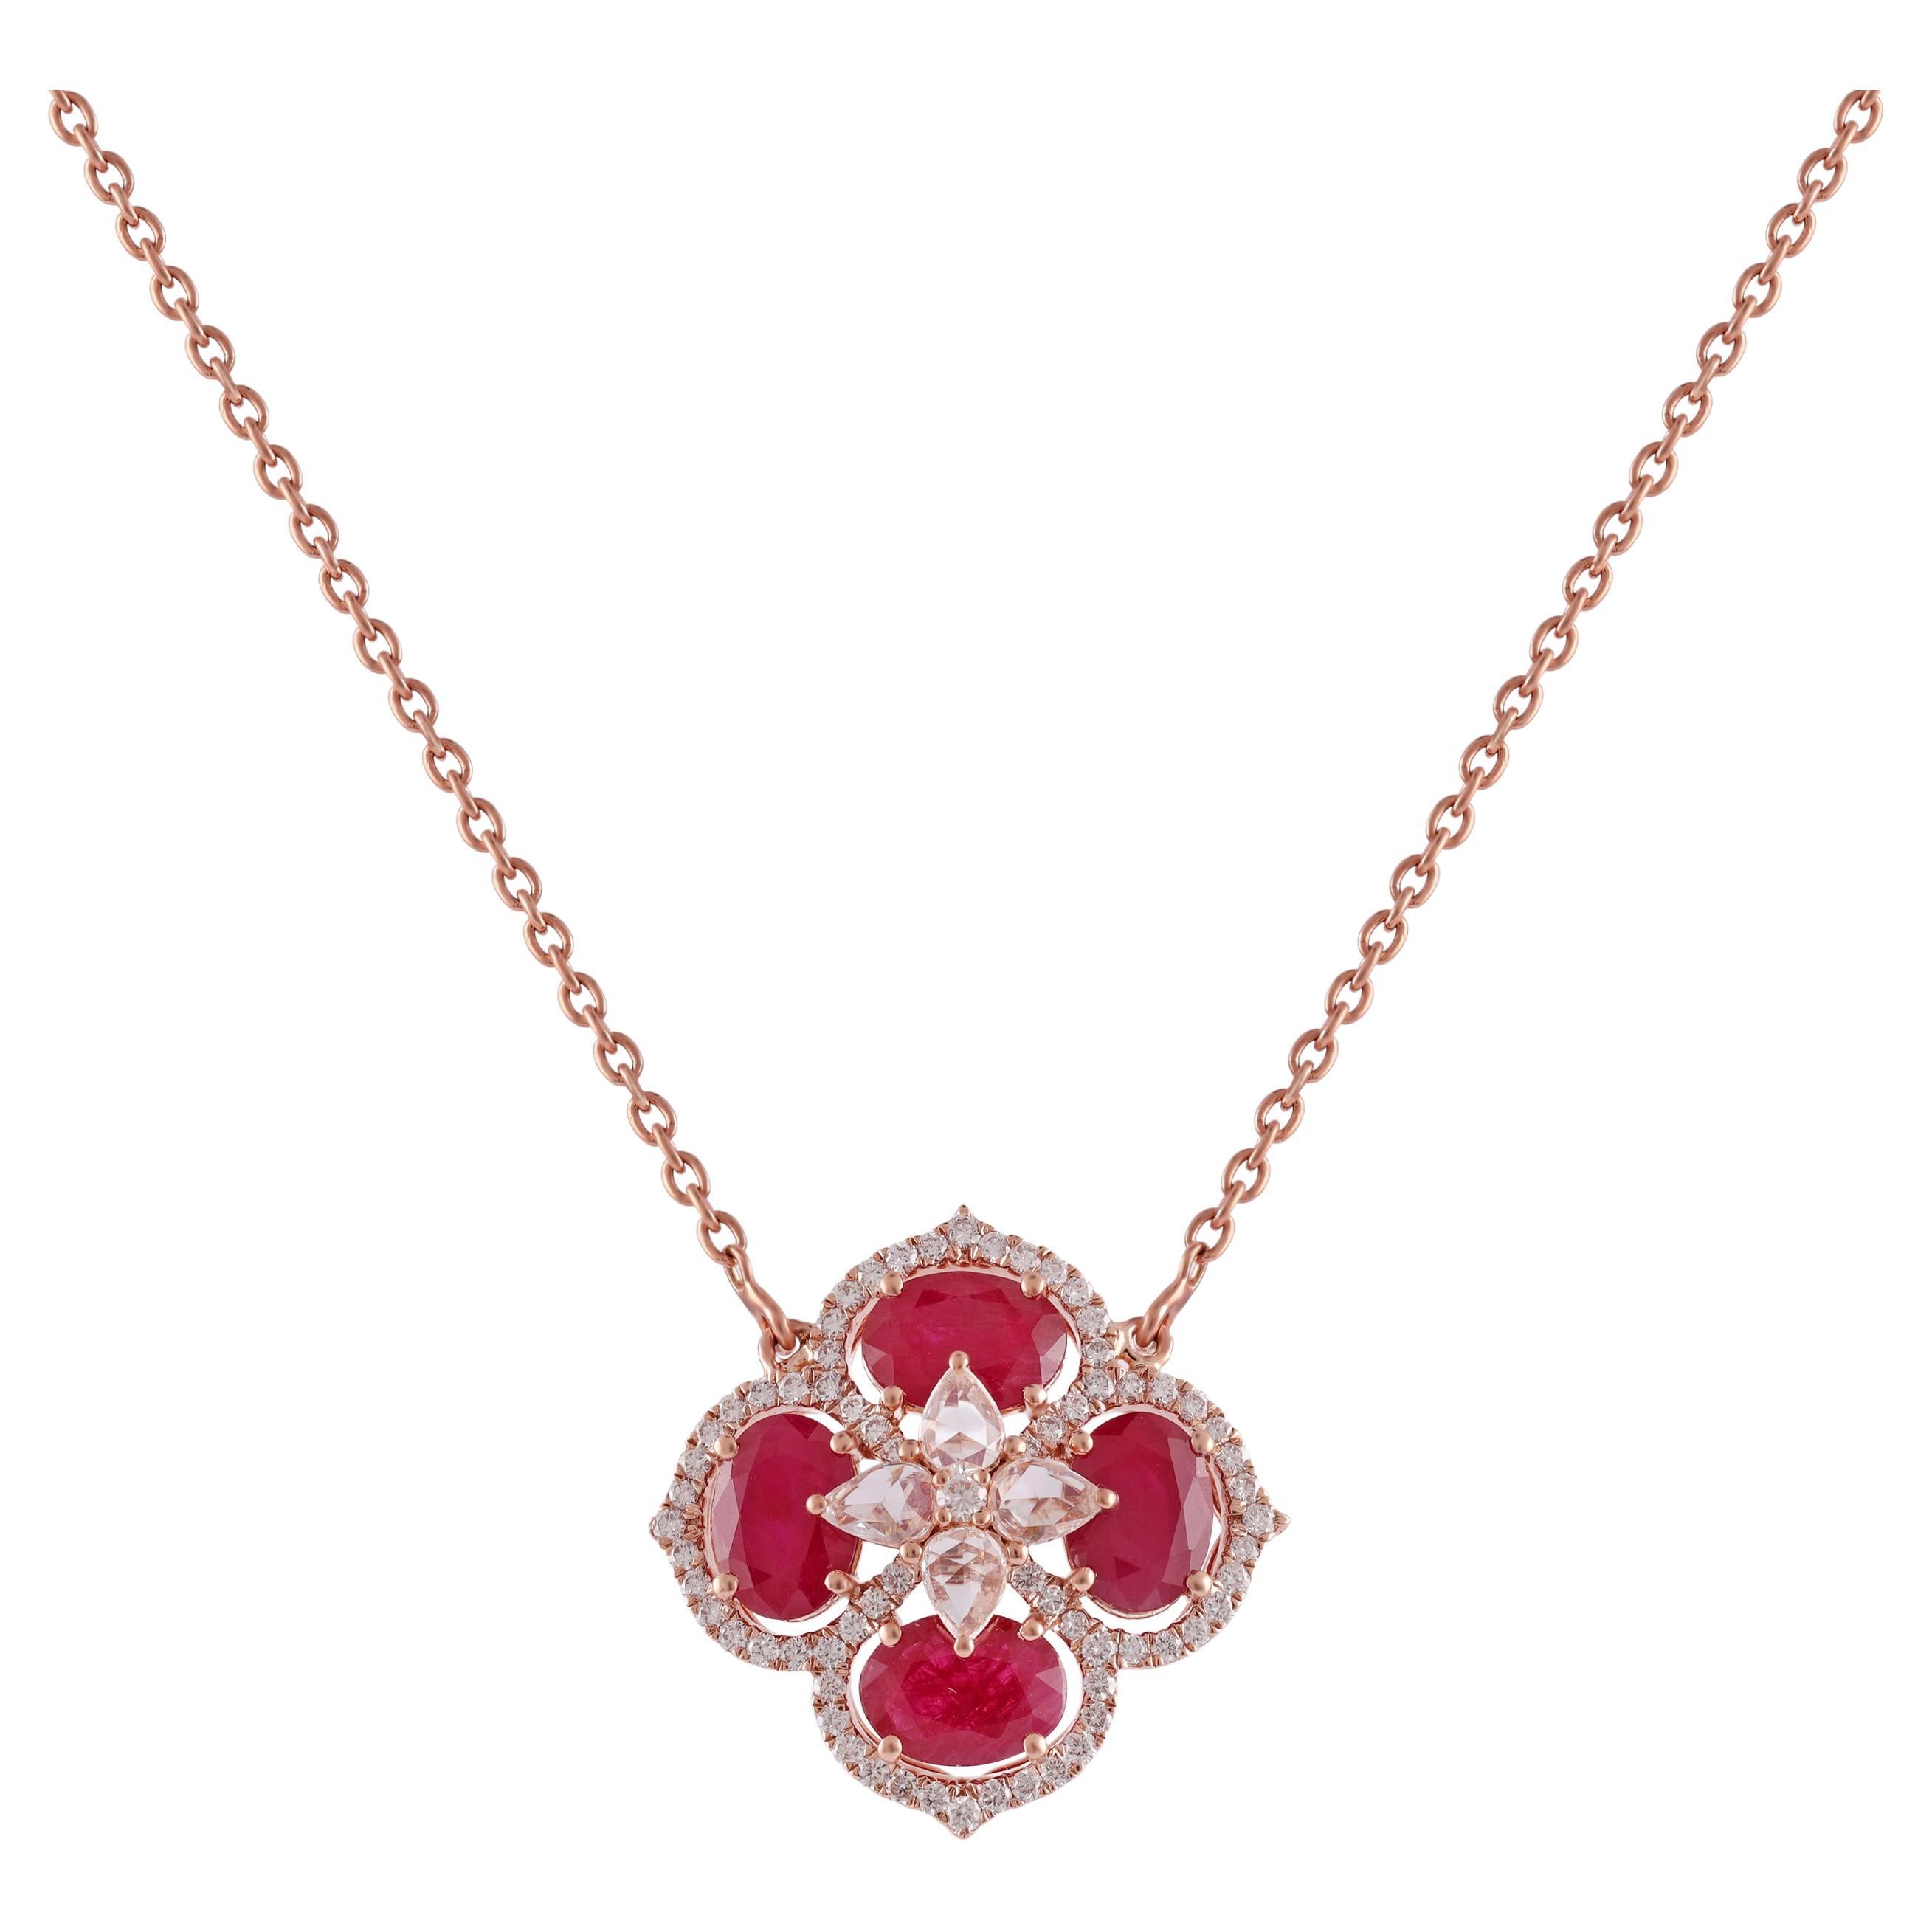  Halskette mit Rubin-Anhänger im Ovalschliff aus 18 Karat Gold mit Diamant